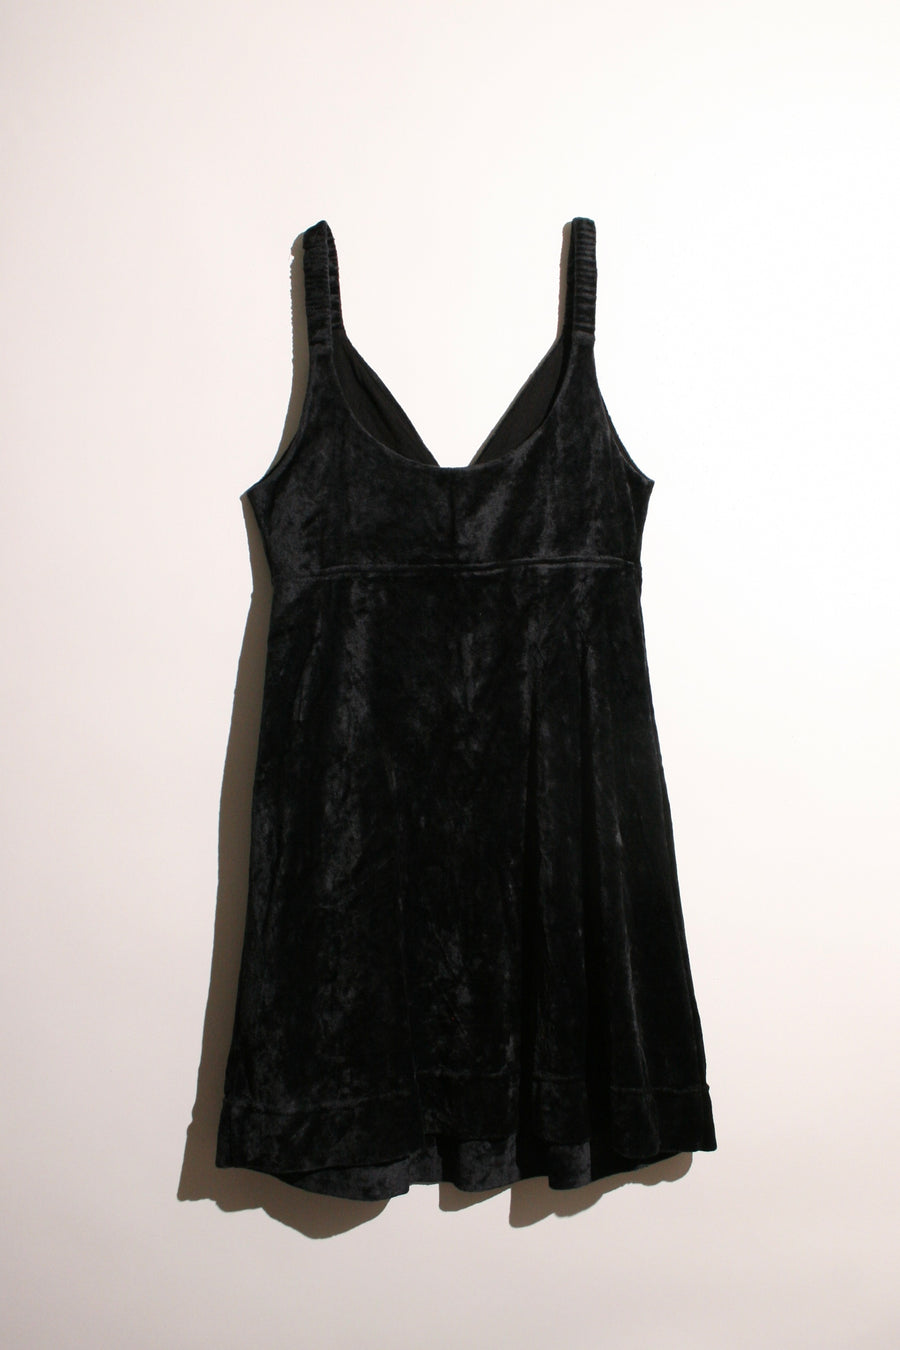 Velvet Mini Dress with Pockets (S-M)